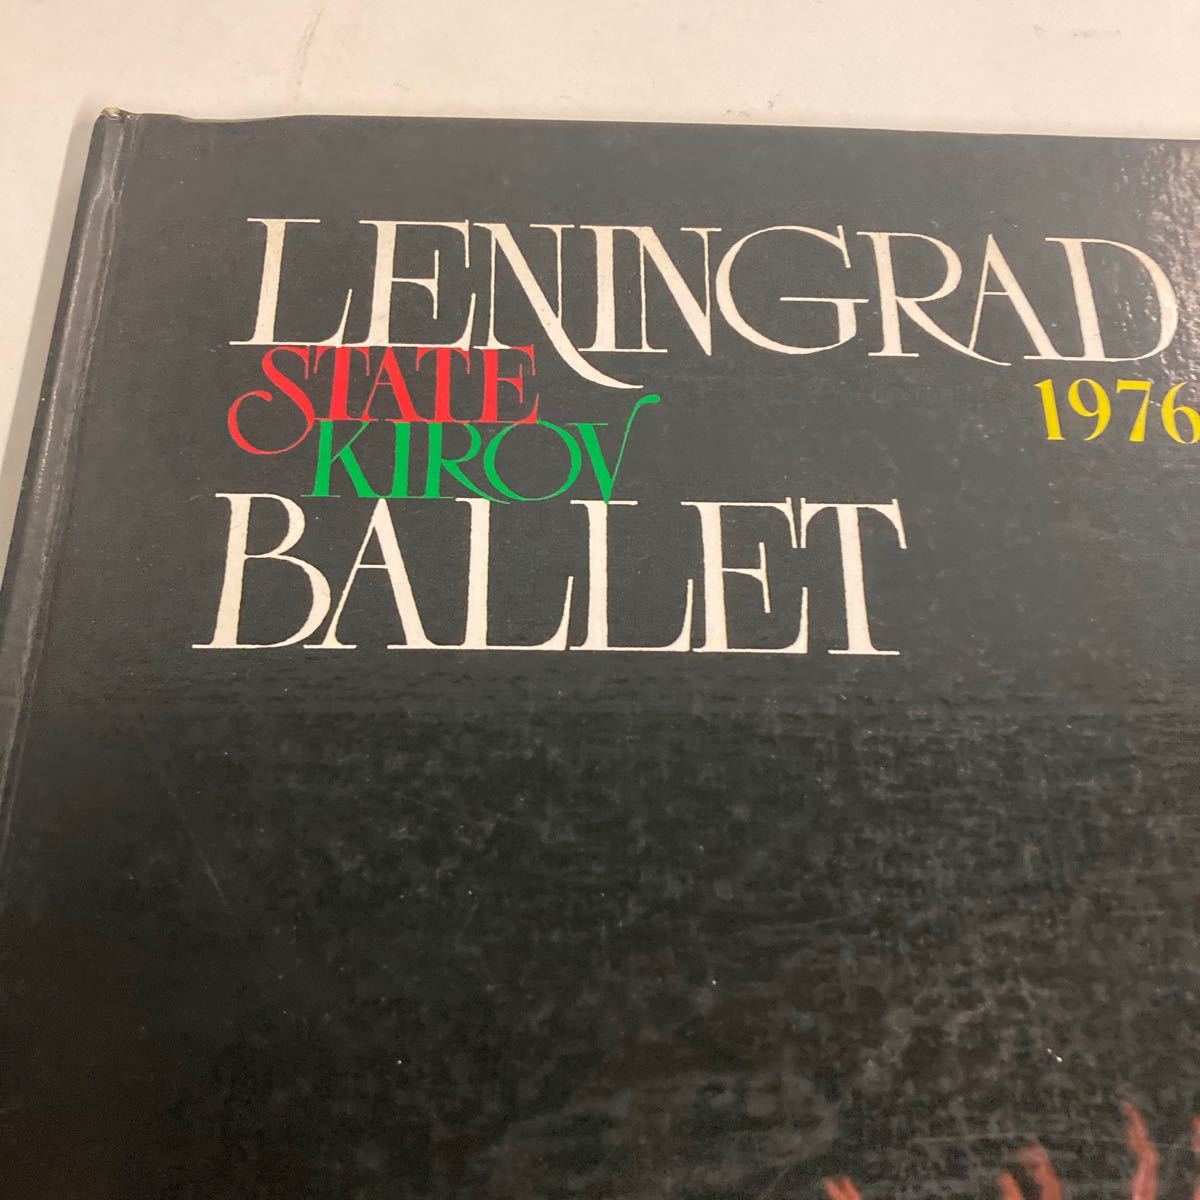 レニングラード・アカデミー・オペラ・バレエ劇場 LENINGRAD BALLET state kirov 1976年 白鳥の湖 レニングラード・キーロフ・バレエの画像2